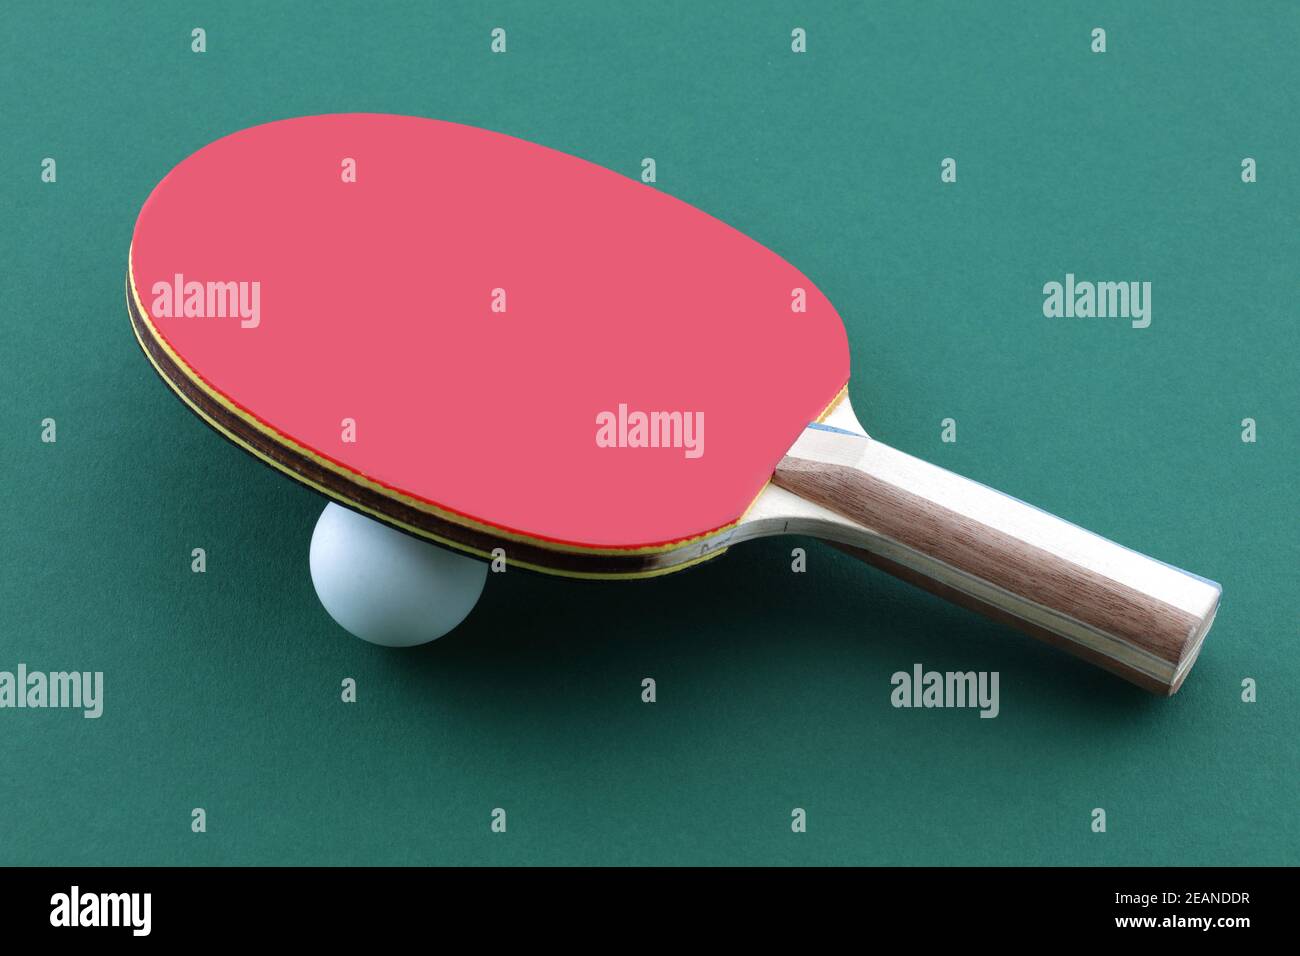 Batte de tennis de table et balle blanche sur ping de table vert paddle de tennis Banque D'Images